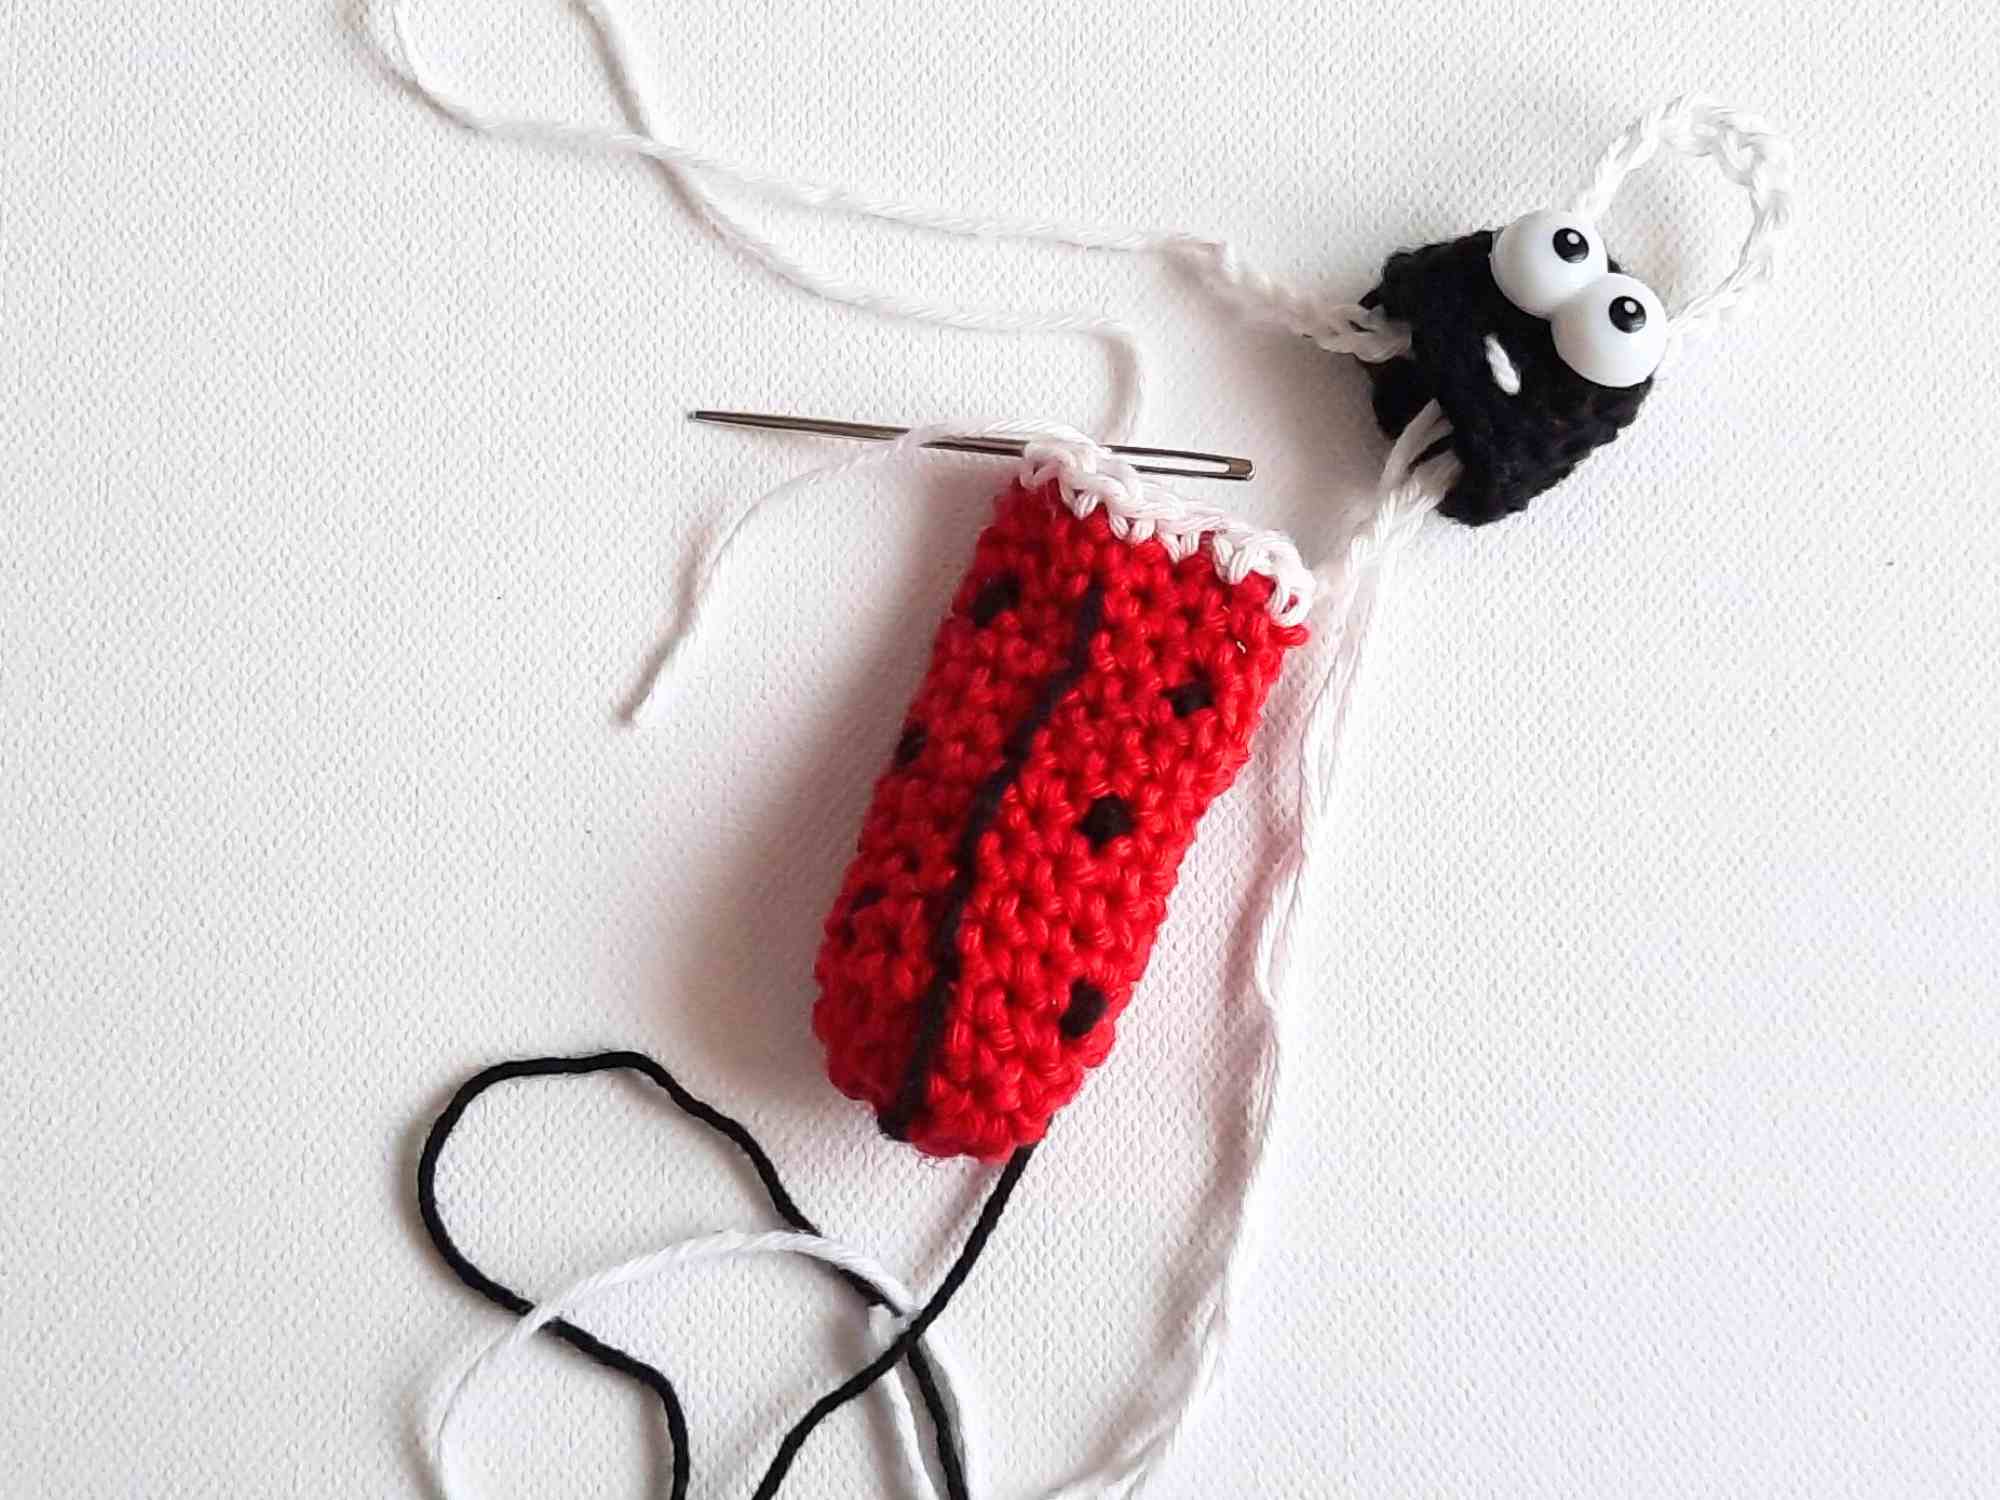 crochet keychain pattern ideas